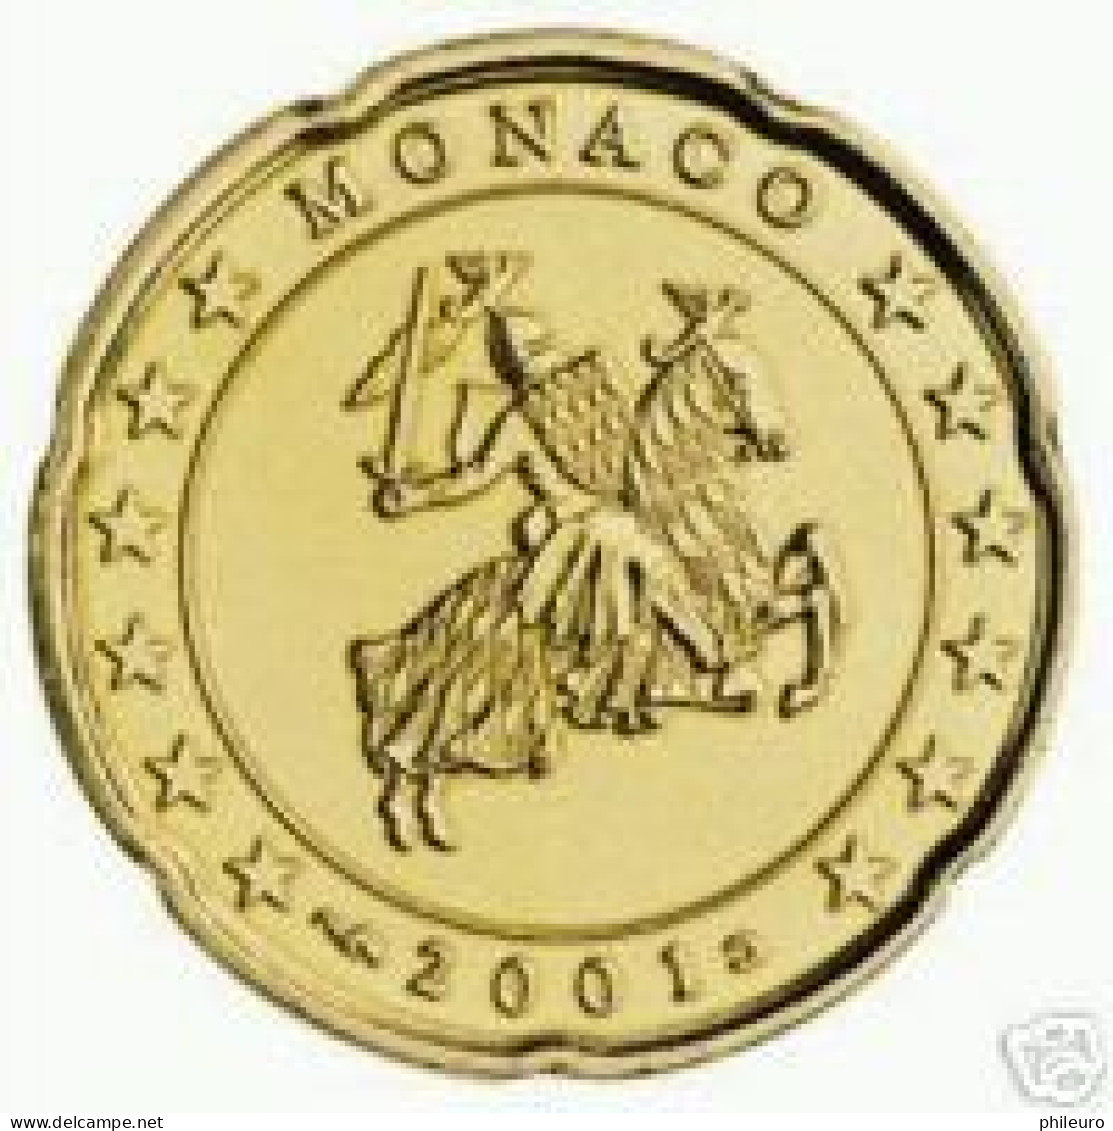 Monaco 2001 : 20 Cent (venant D'un Starterkit) - Monaco